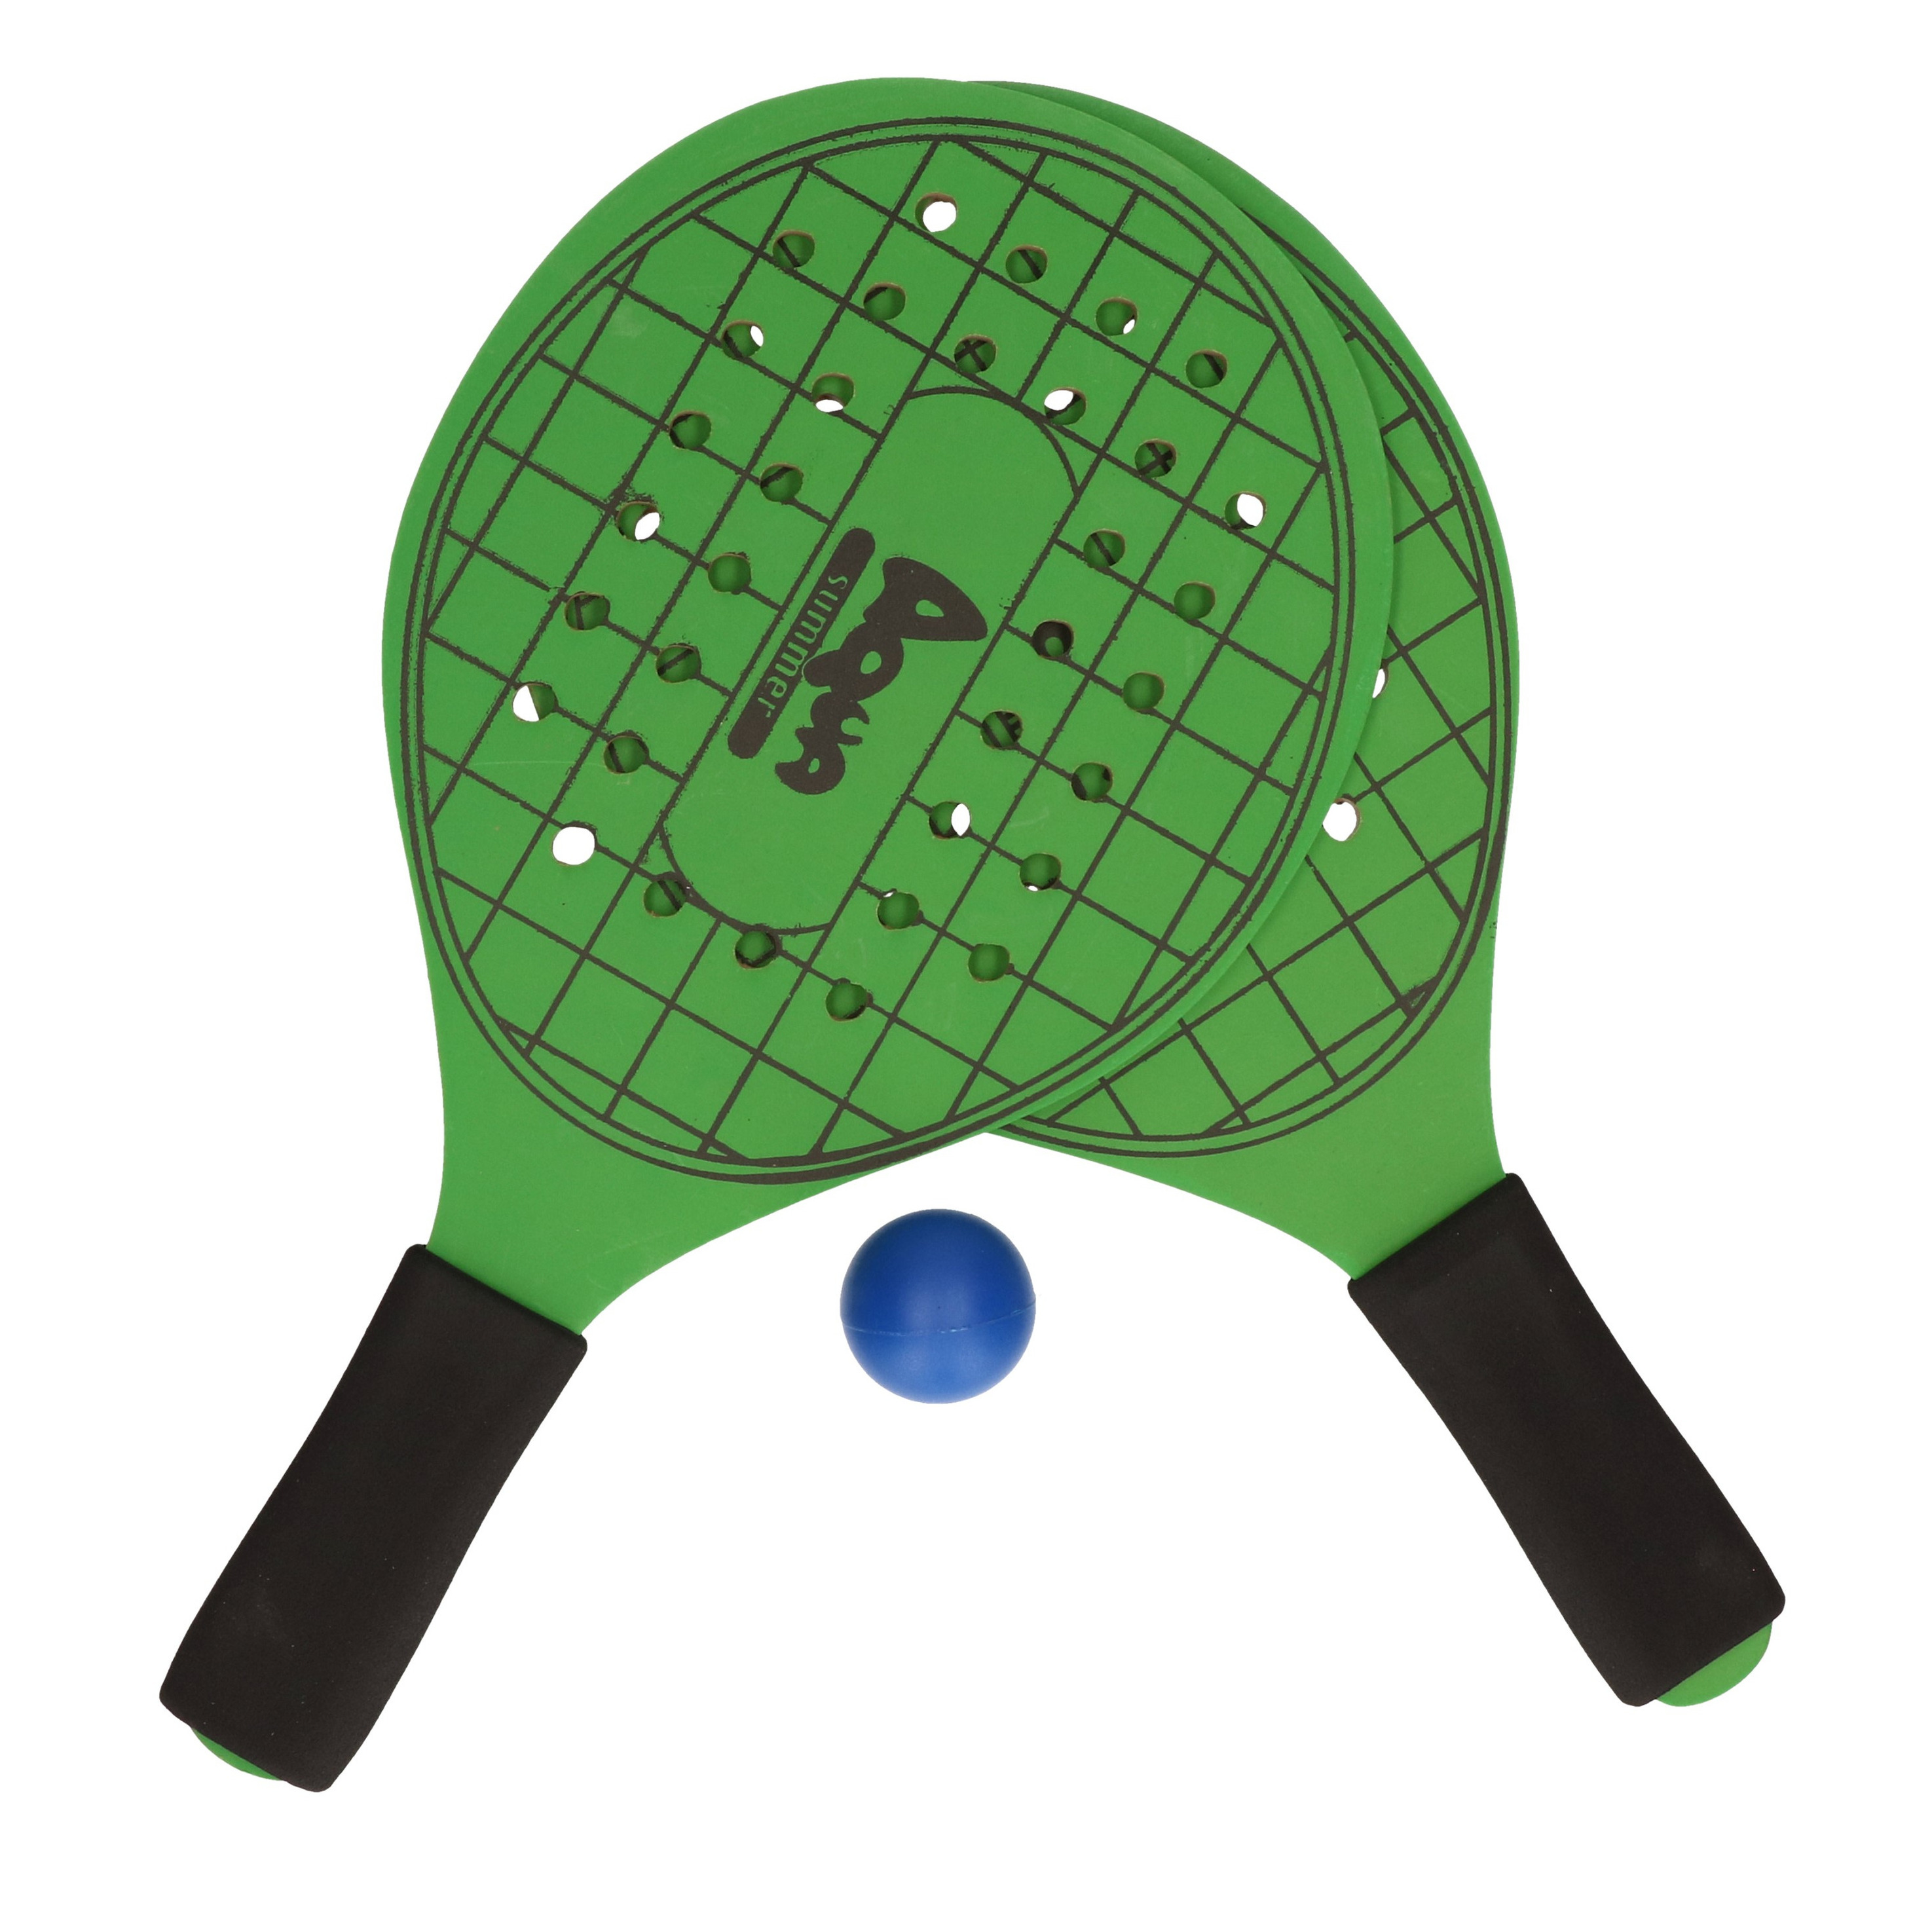 Actief speelgoed tennis-beachball setje groen met tennisracketmotief